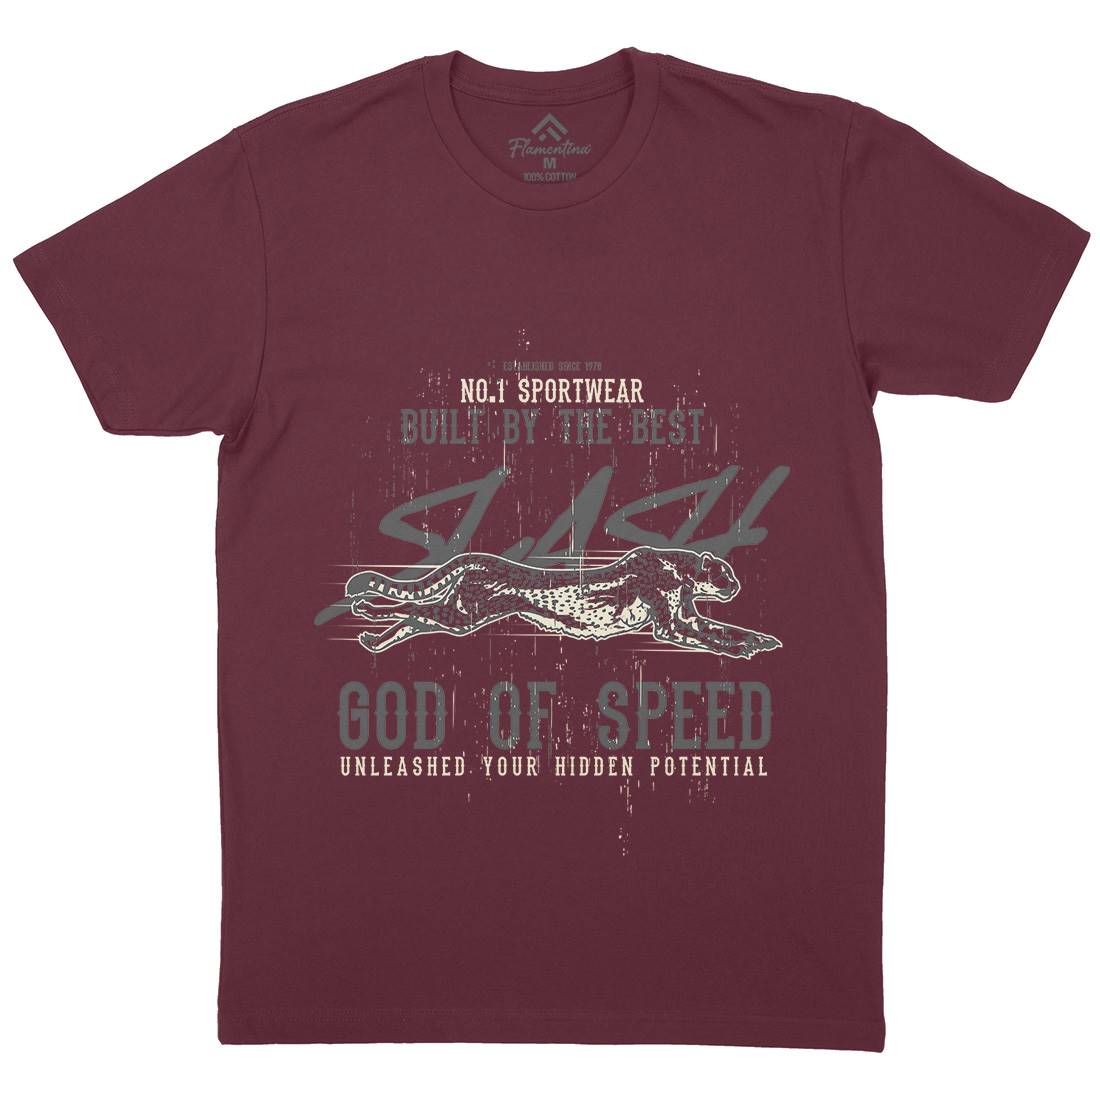 Cheetah Speed Mens Organic Crew Neck T-Shirt Animals B697